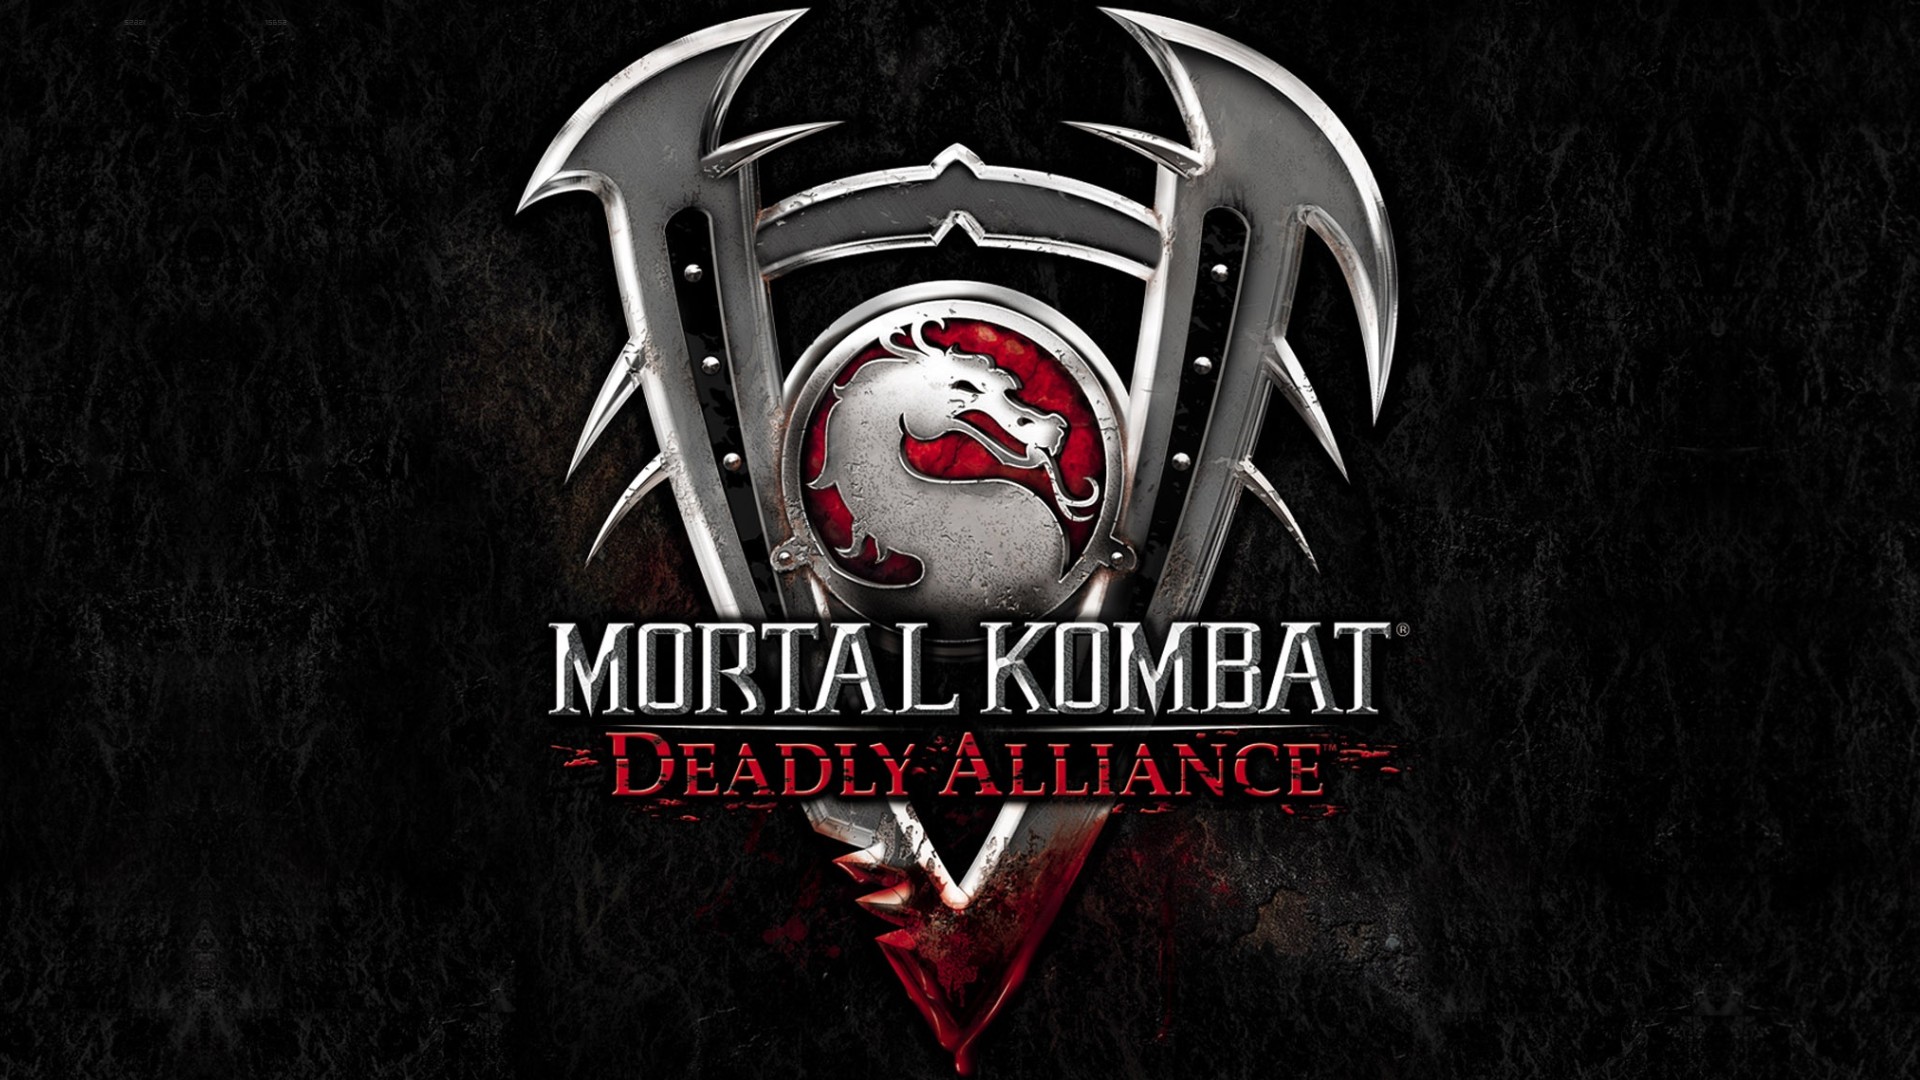 Mortal Kombat: Deadly Alliance HD Wallpaper